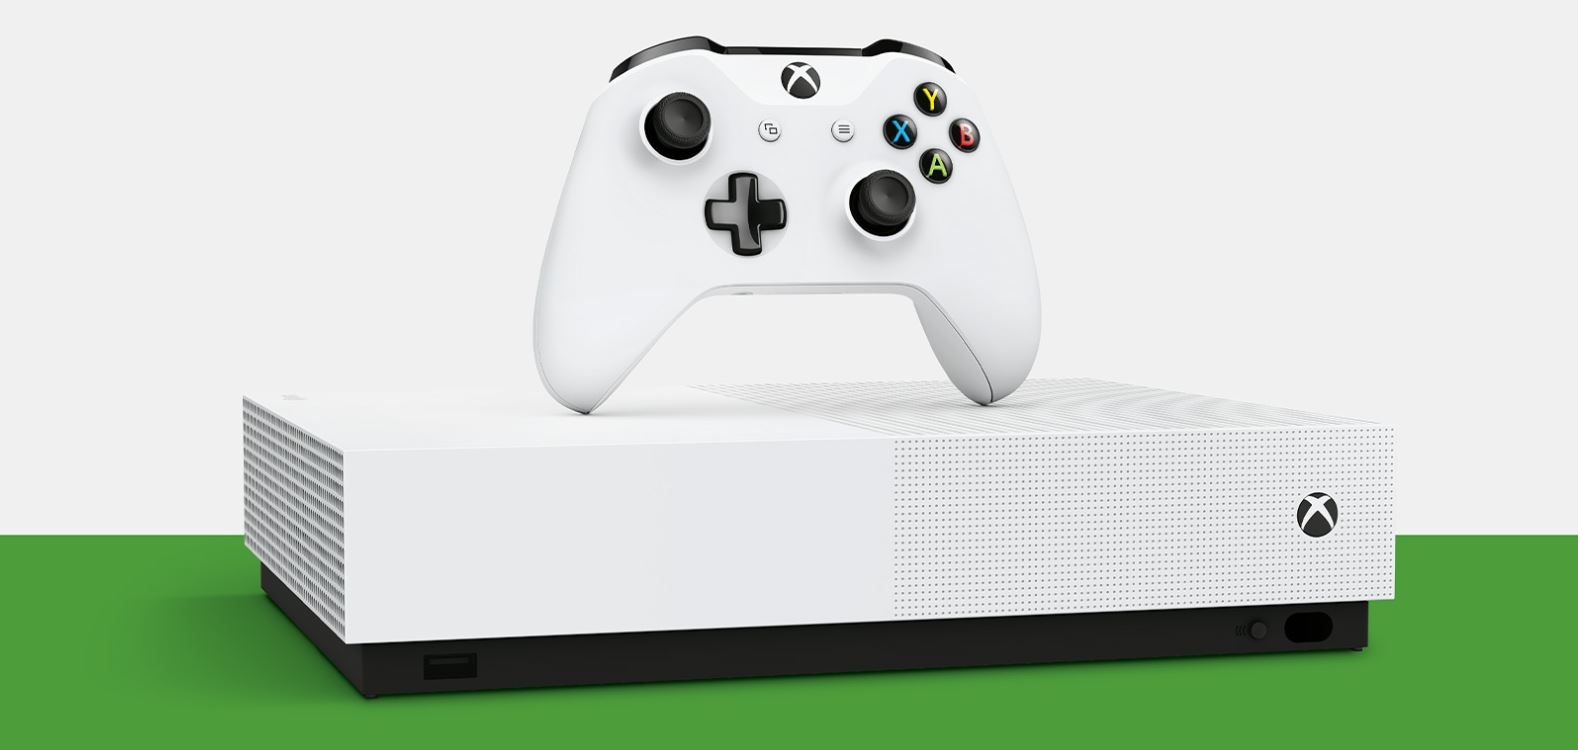 ¡Sólo hoy! Xbox One S All-Digital Edition 1TB con 3 juegos por sólo 129€ (PVP 229€)